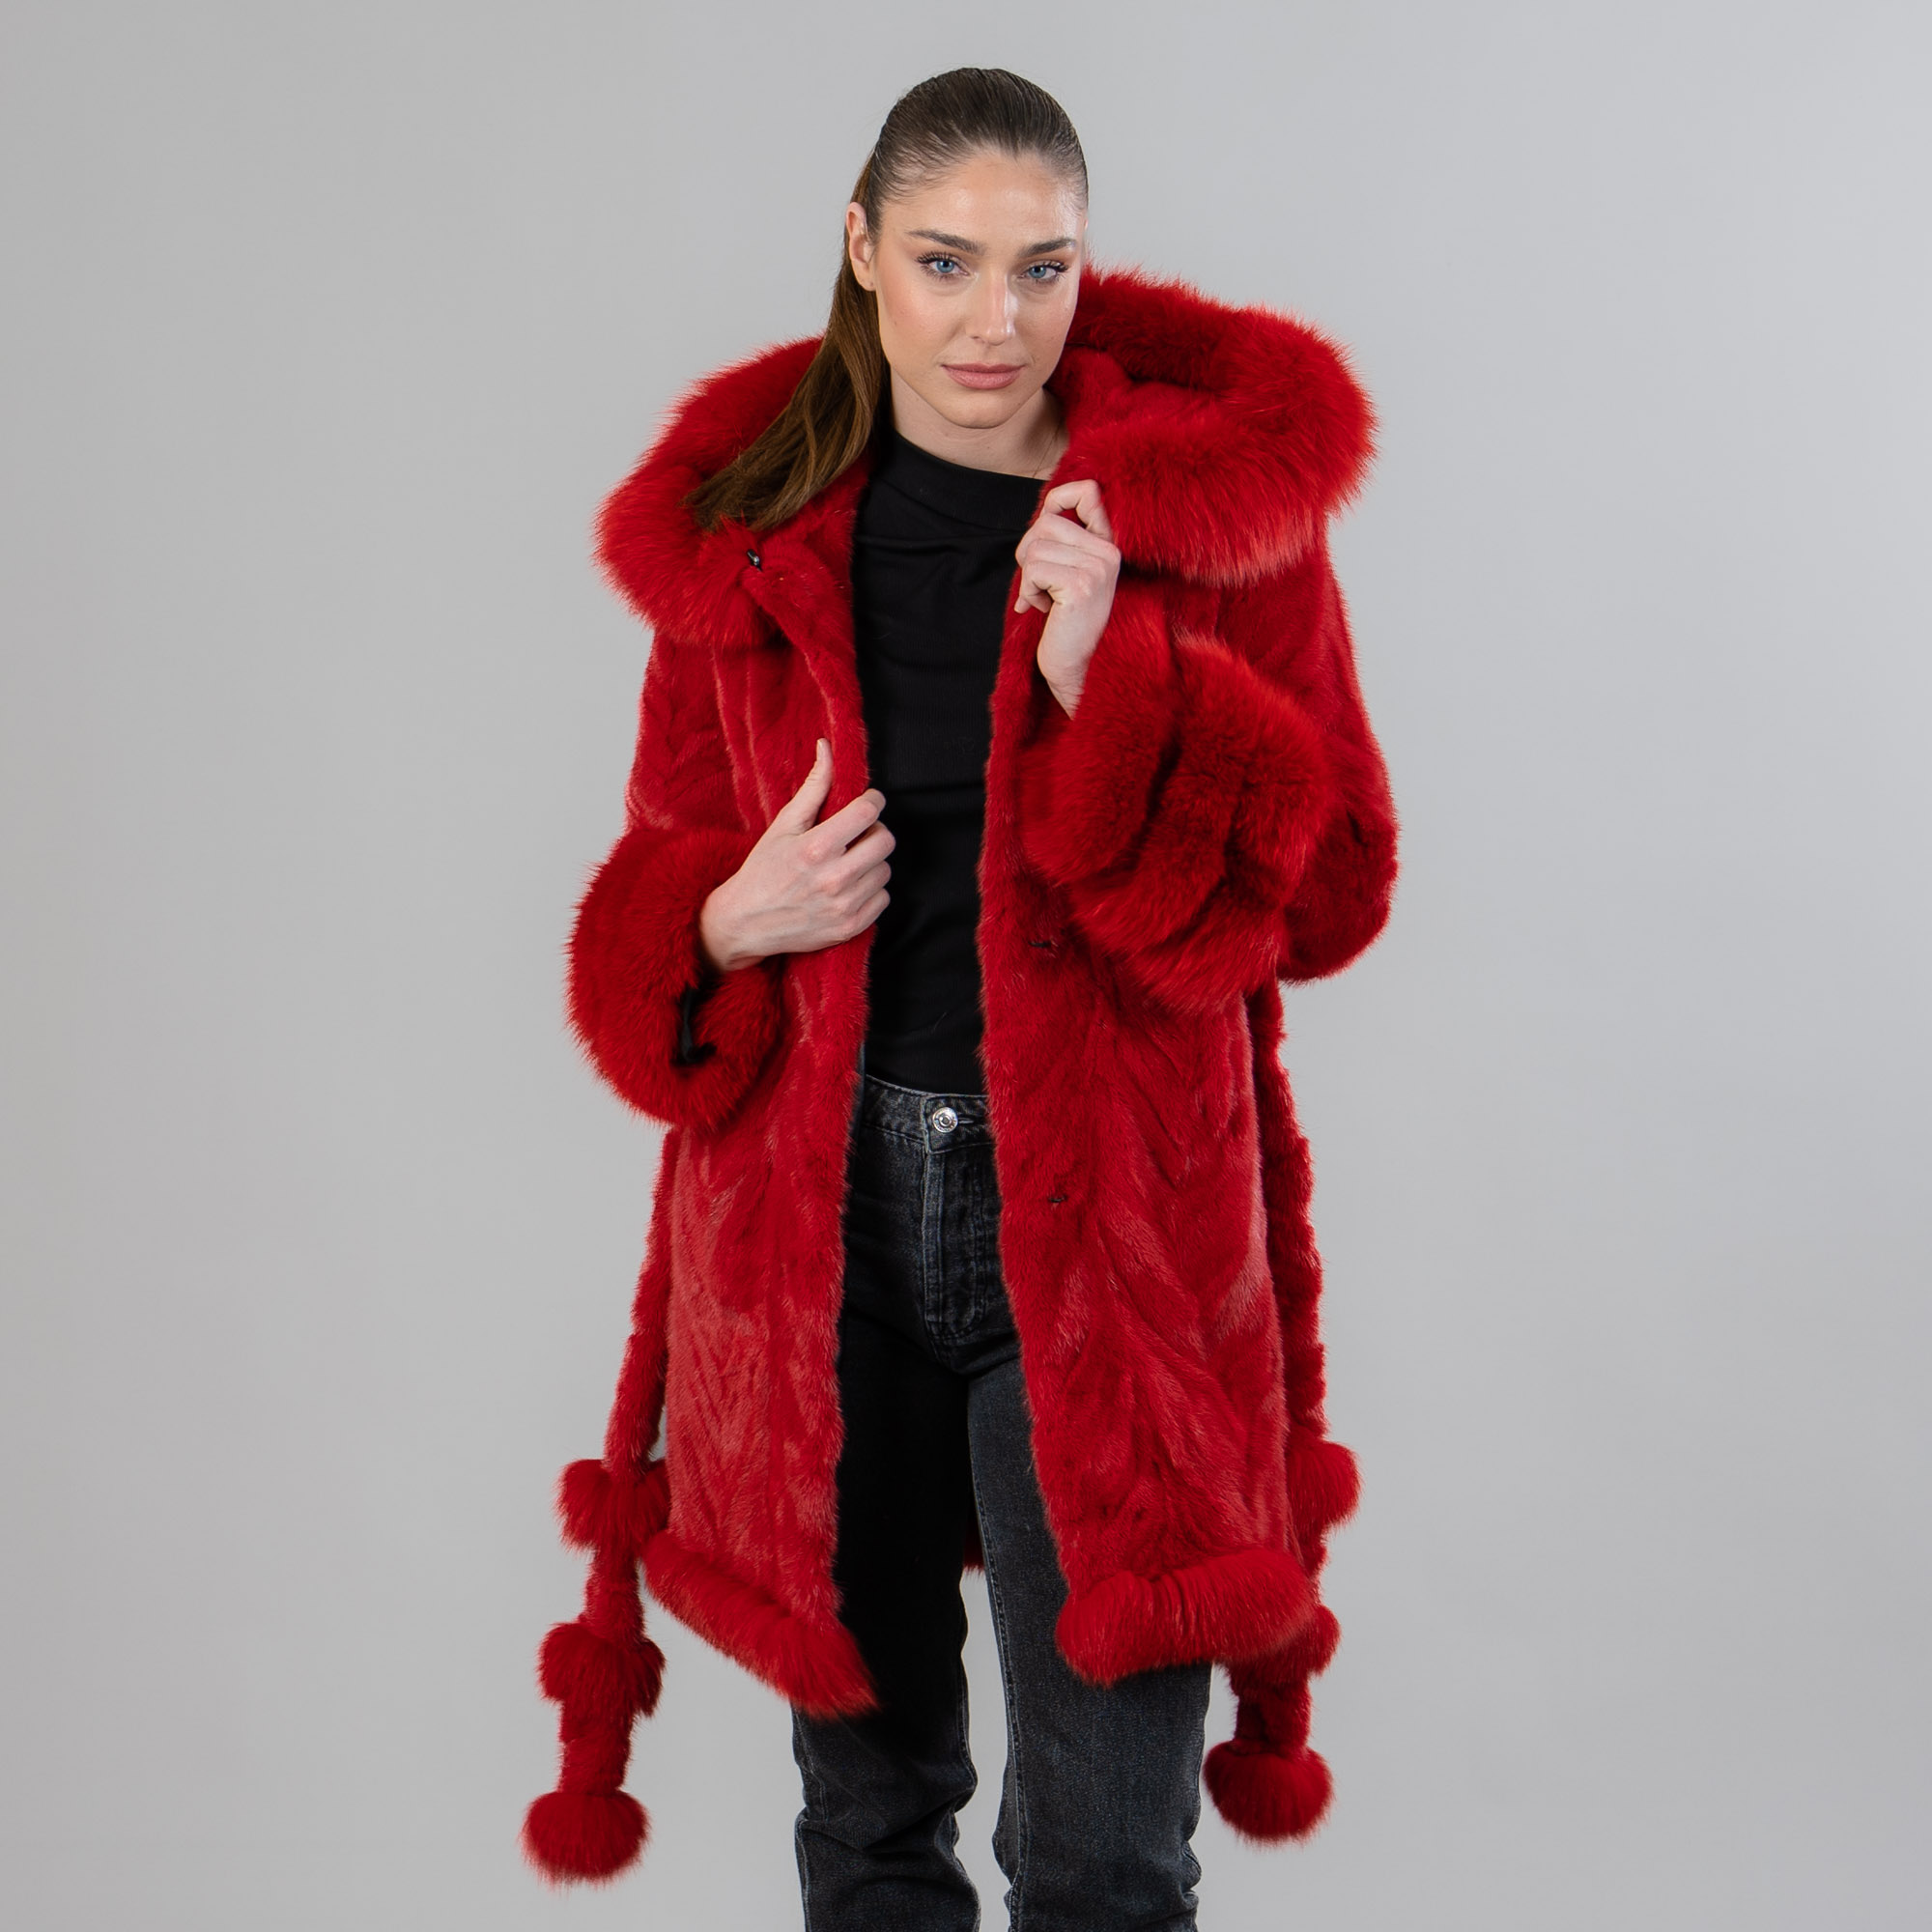 κόκκινο γούνινο βιζόν παλτό με γούνα αλεπούς